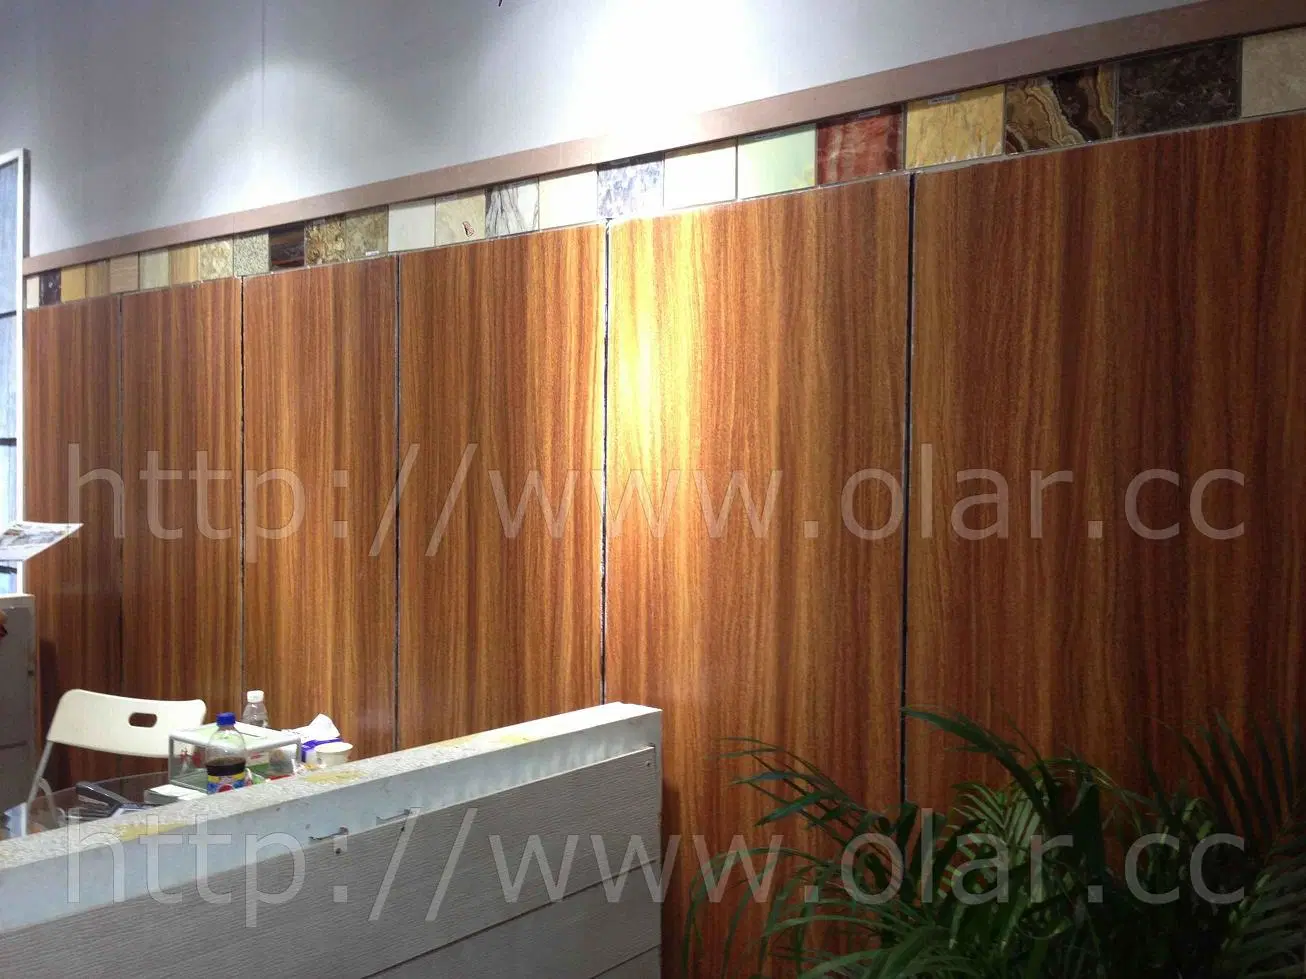 Placa de cemento de fibra de madera barniz UV junta para decoración de interiores